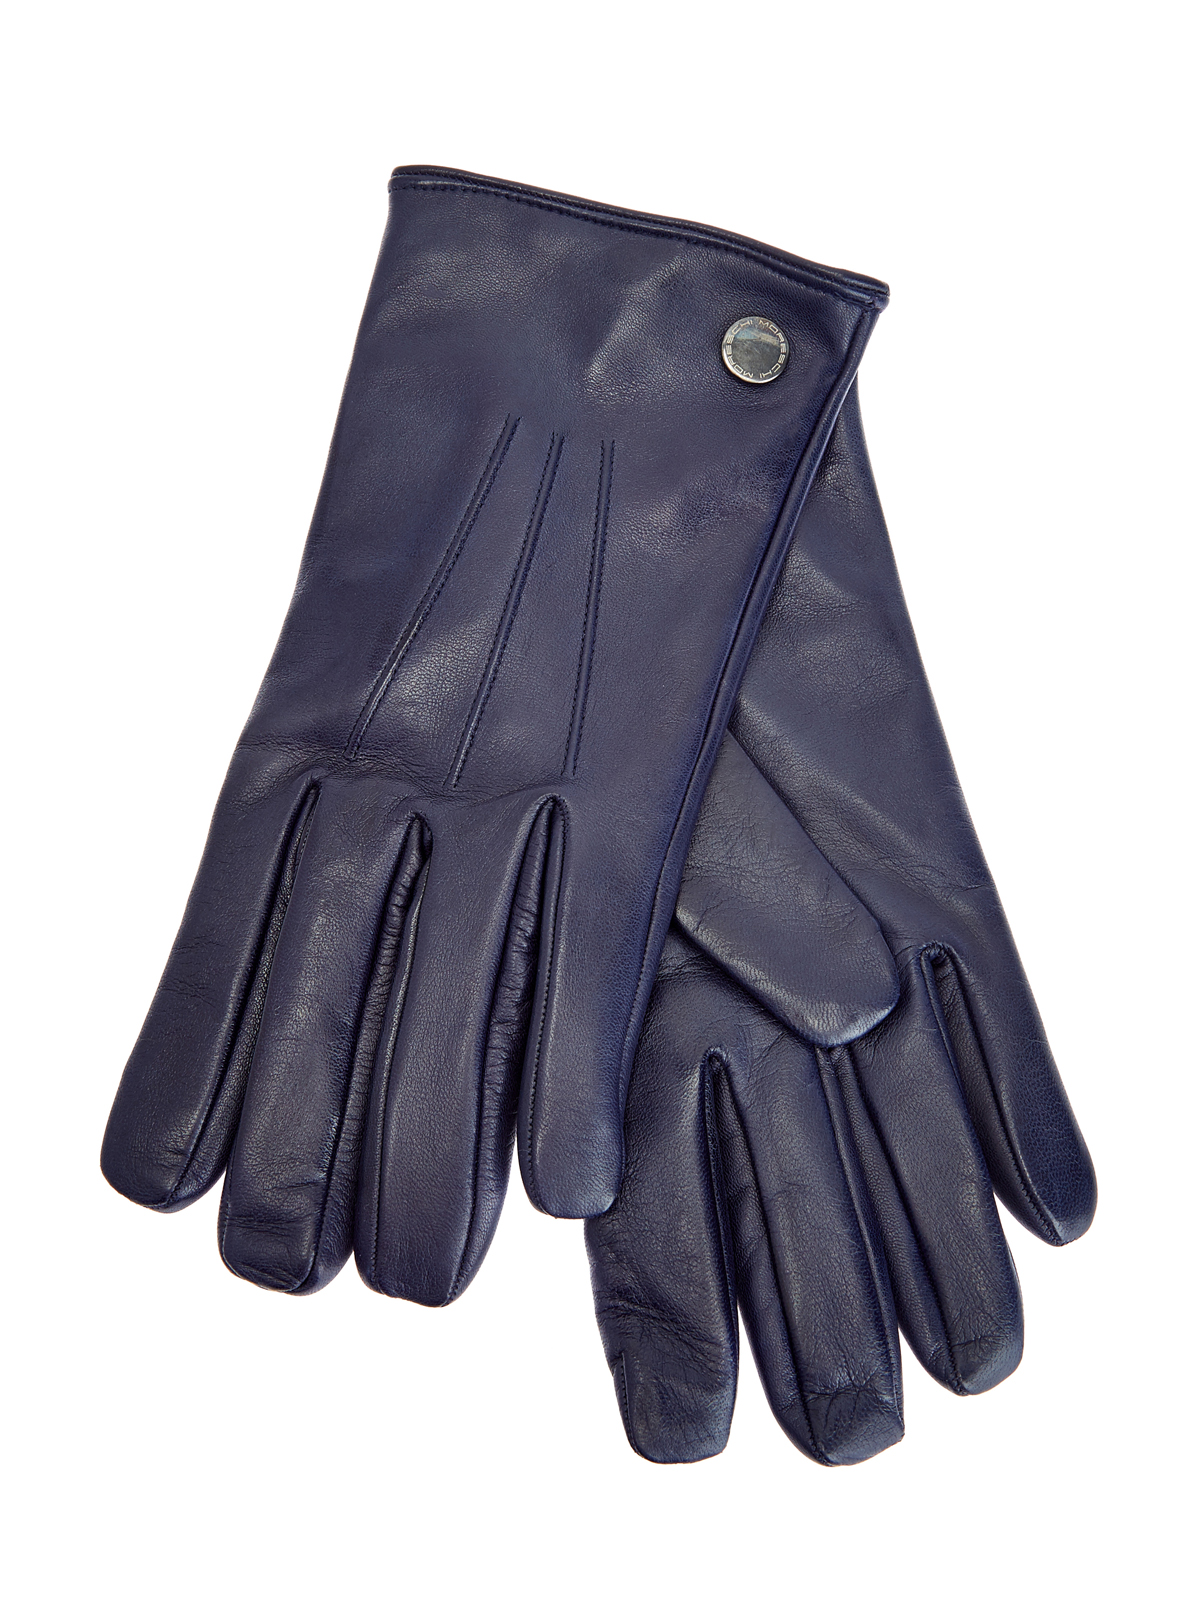 Перчатки из кожи наппа с литой фурнитурой MORESCHI, цвет синий, размер L;S;M